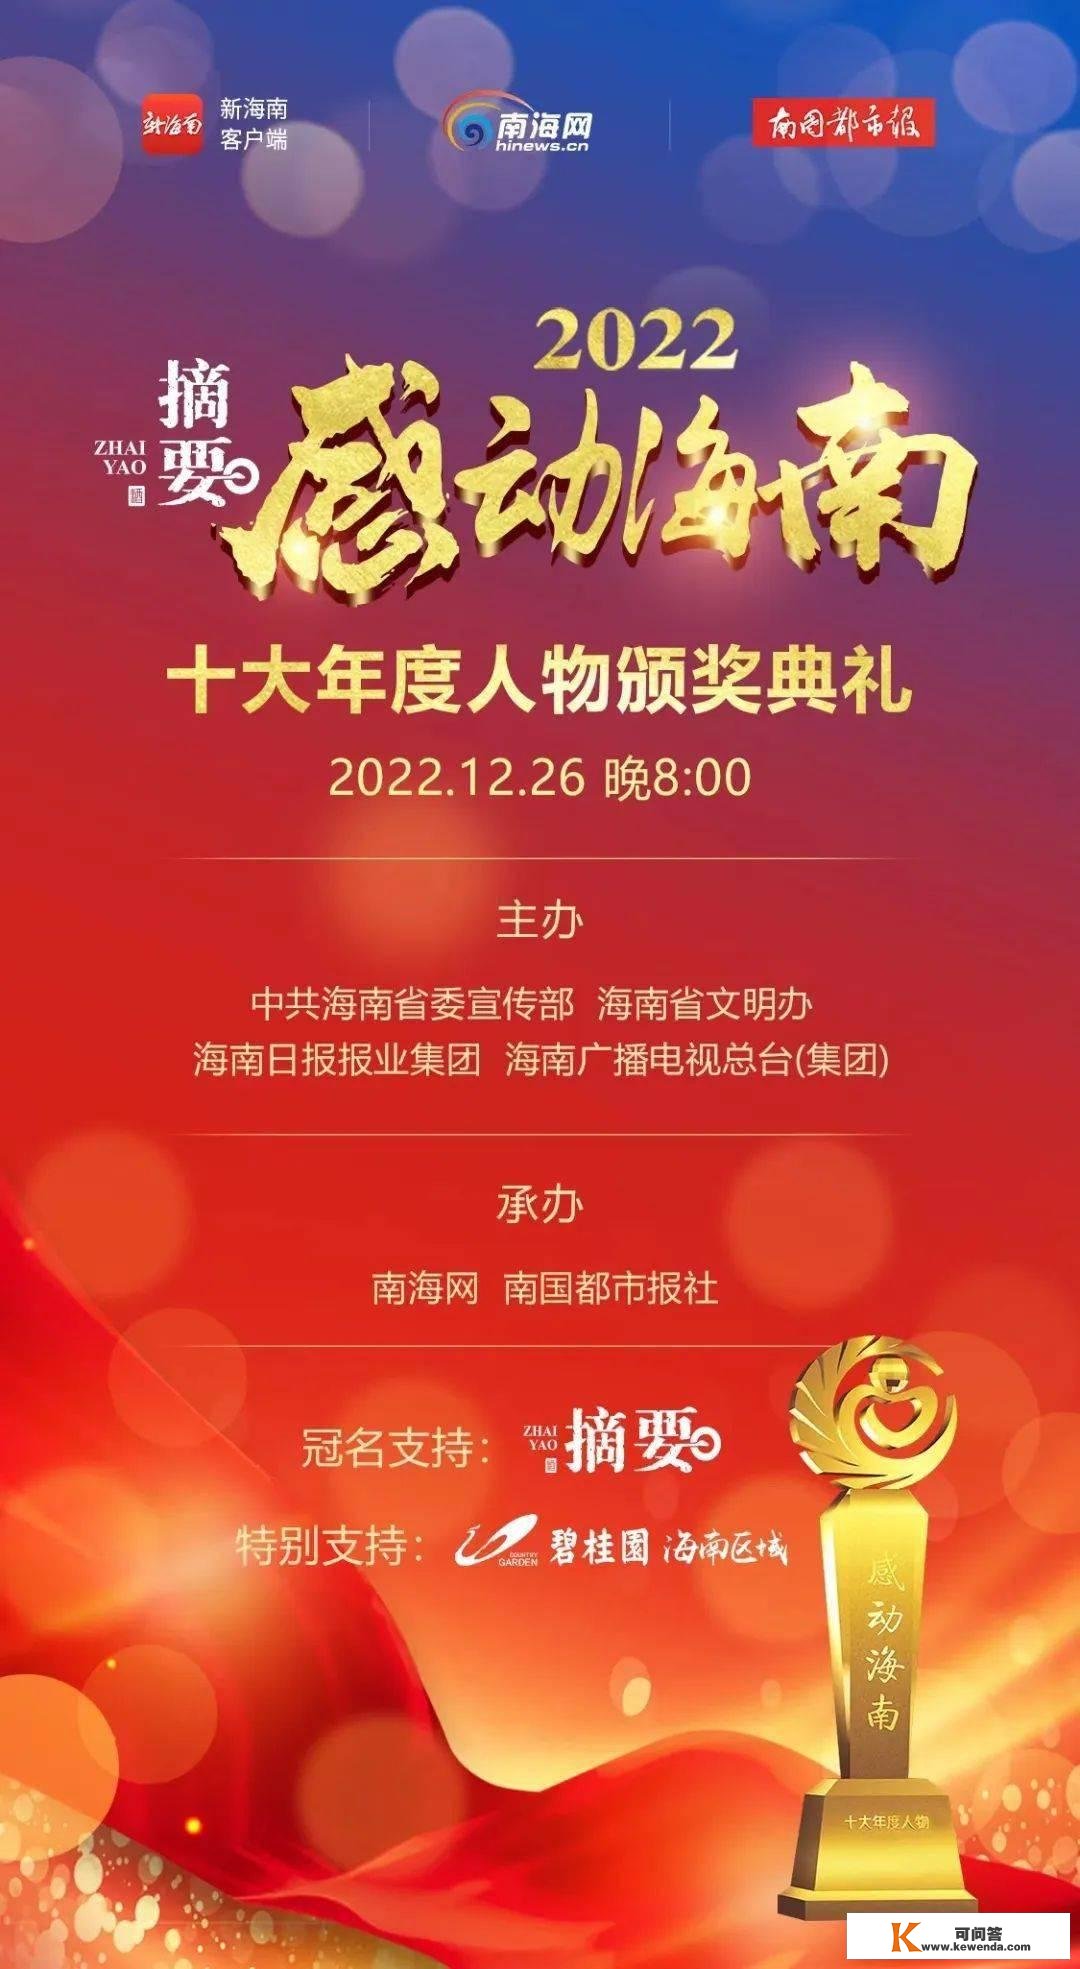 曲播预告 | “打动海南”2022十大年度人物颁奖仪式将于今晚20：00举行，陈旭入围